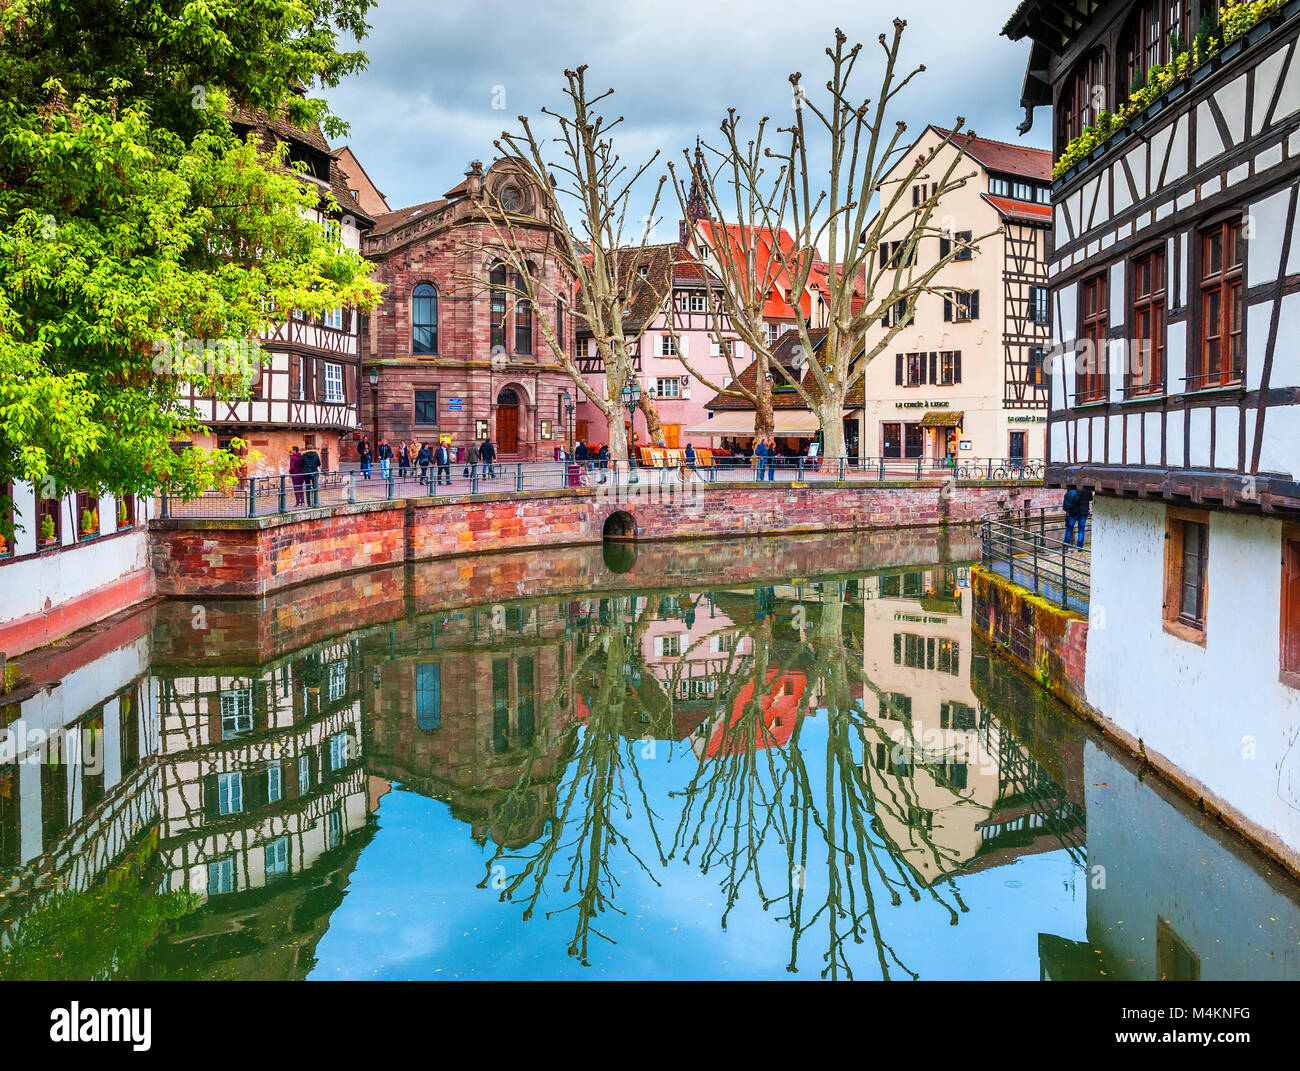 Passeggiate intorno al piccolo Francia trimestre a Strasburgo Foto Stock